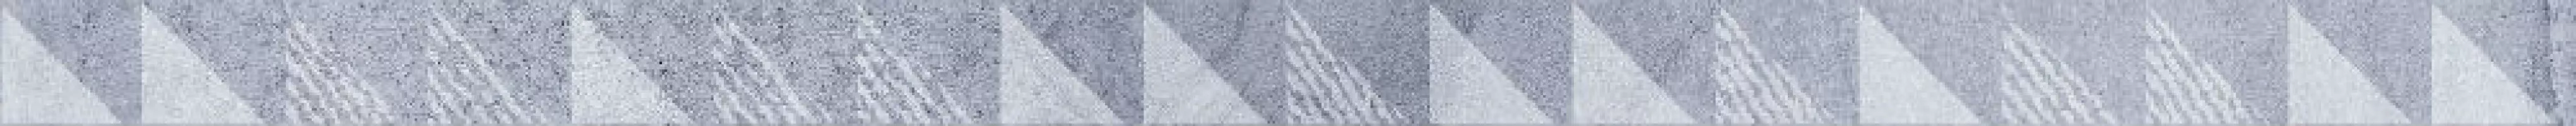 Плитка LB-Ceramics 60x3 Вестанвинд бордюр голубой 1506-0023 матовая